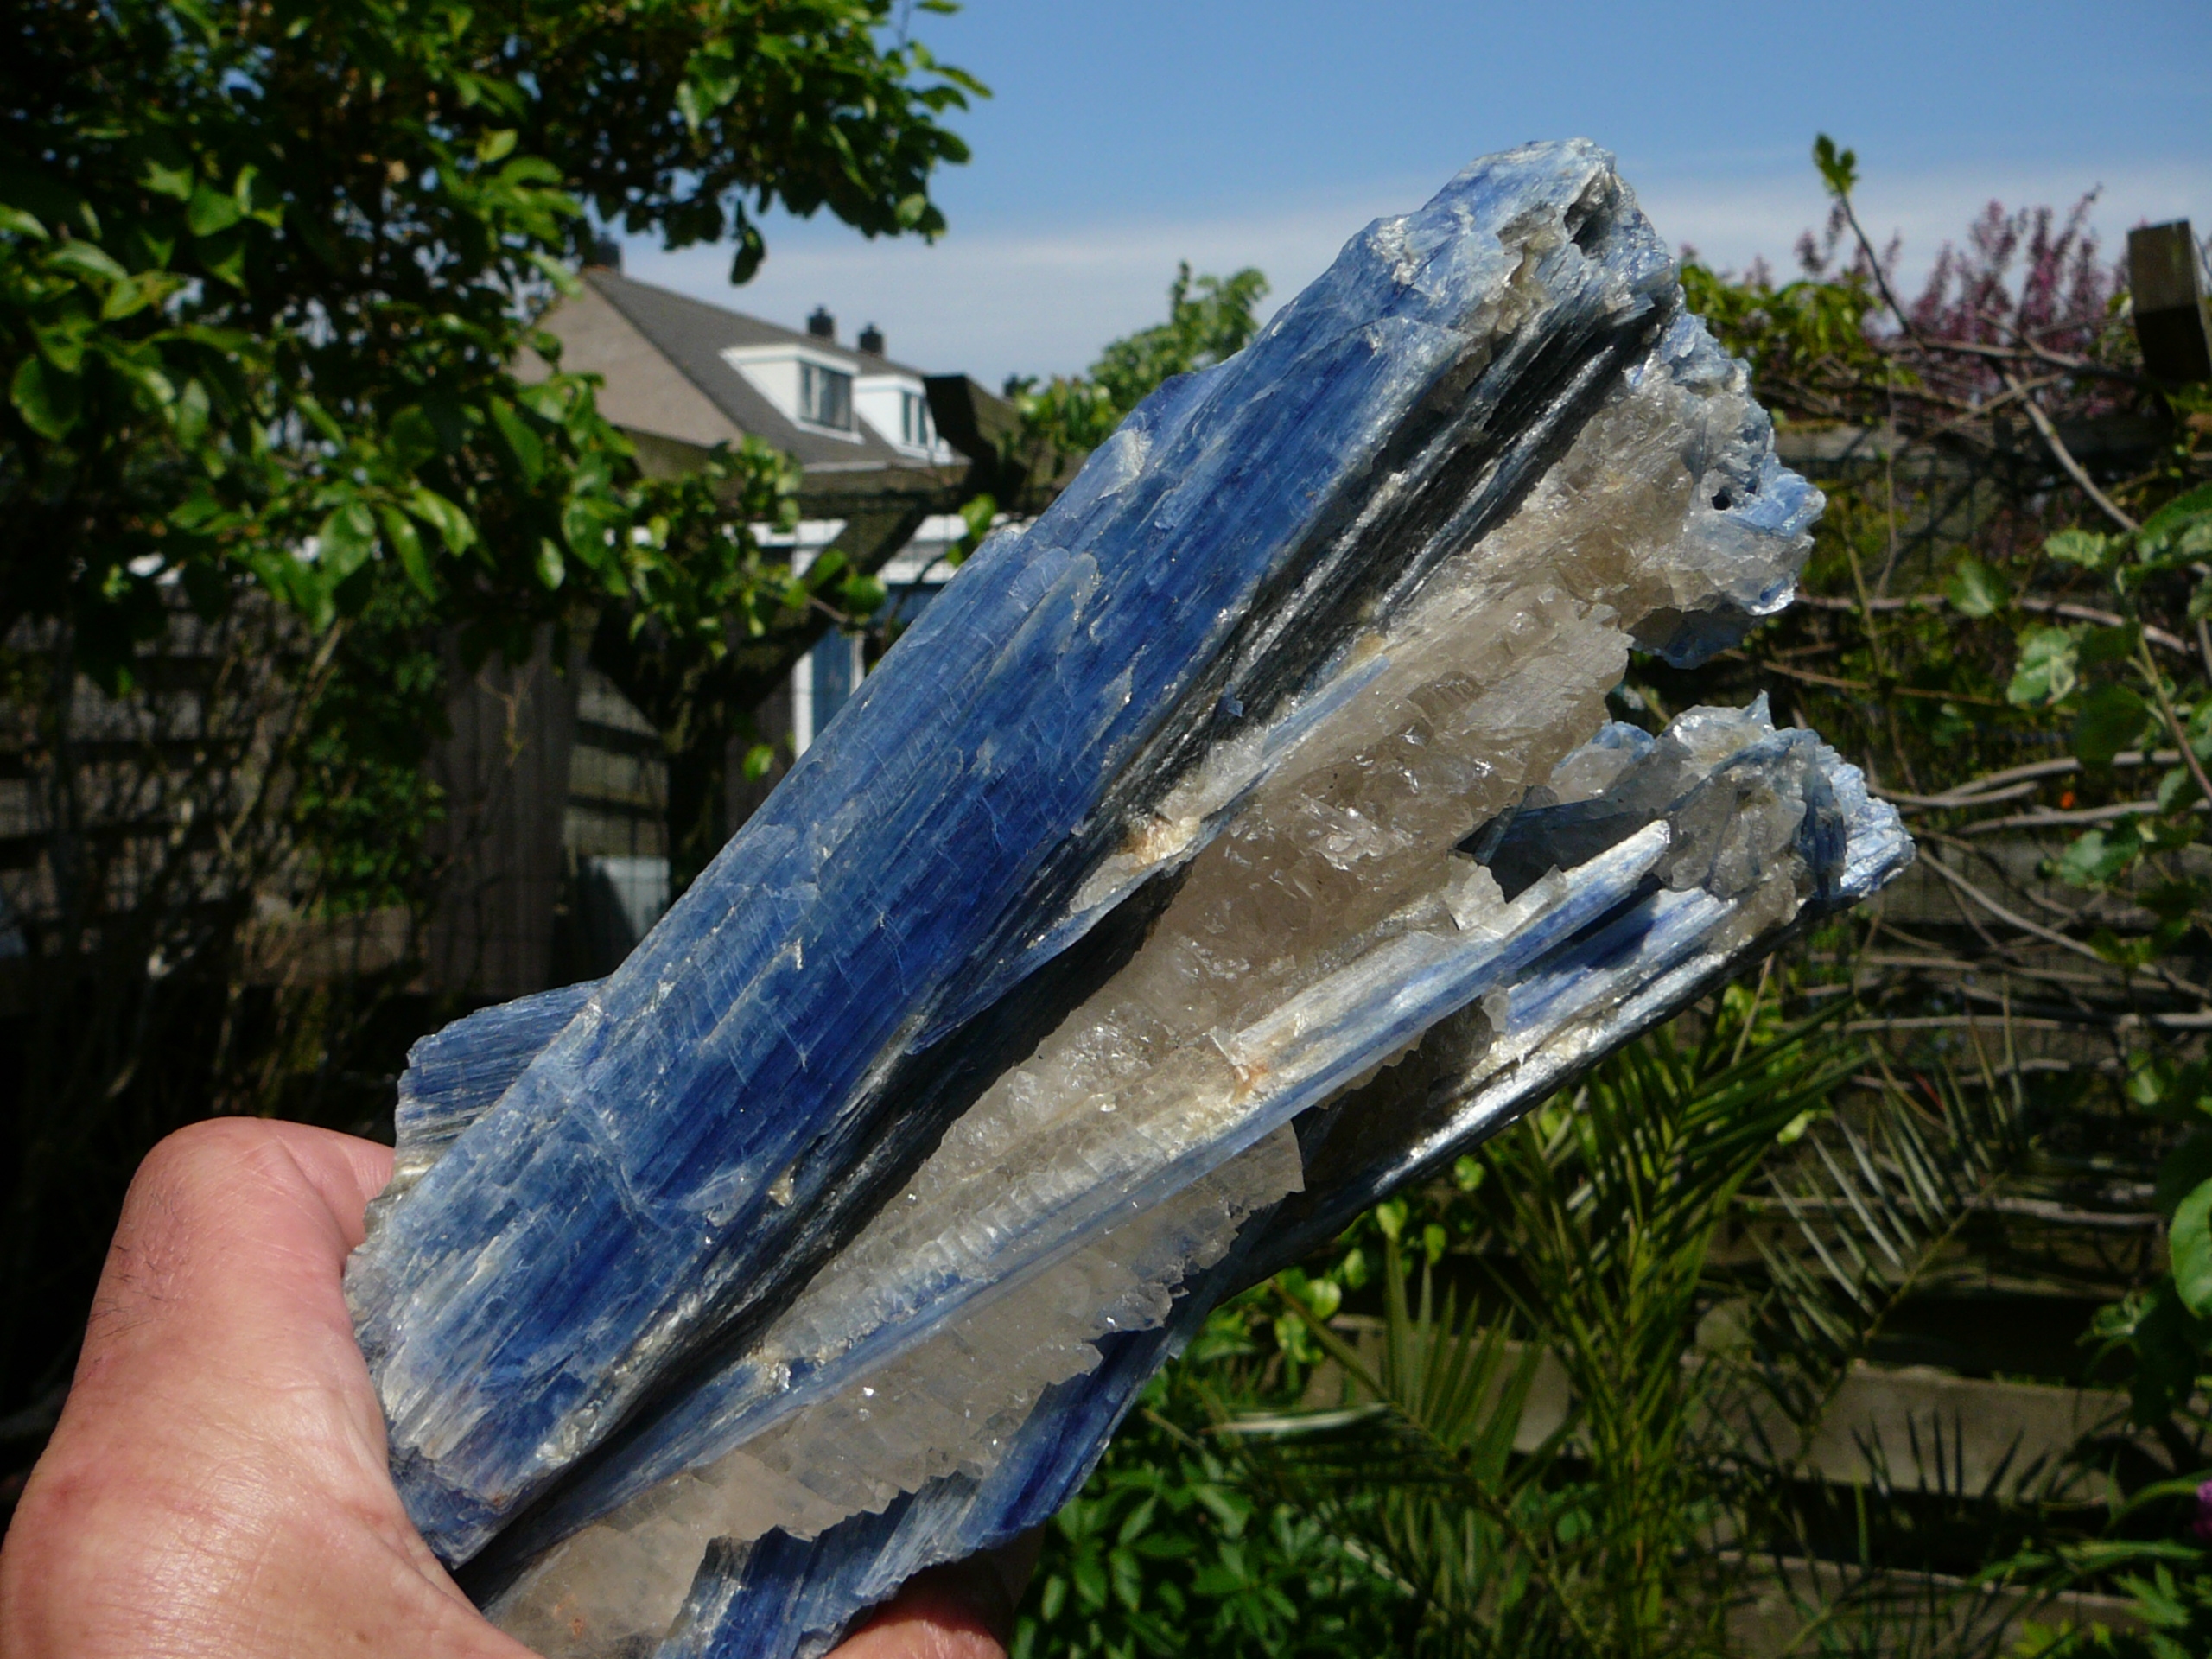 Blue kyanite crystals in a matrix of semi-transparent quartz